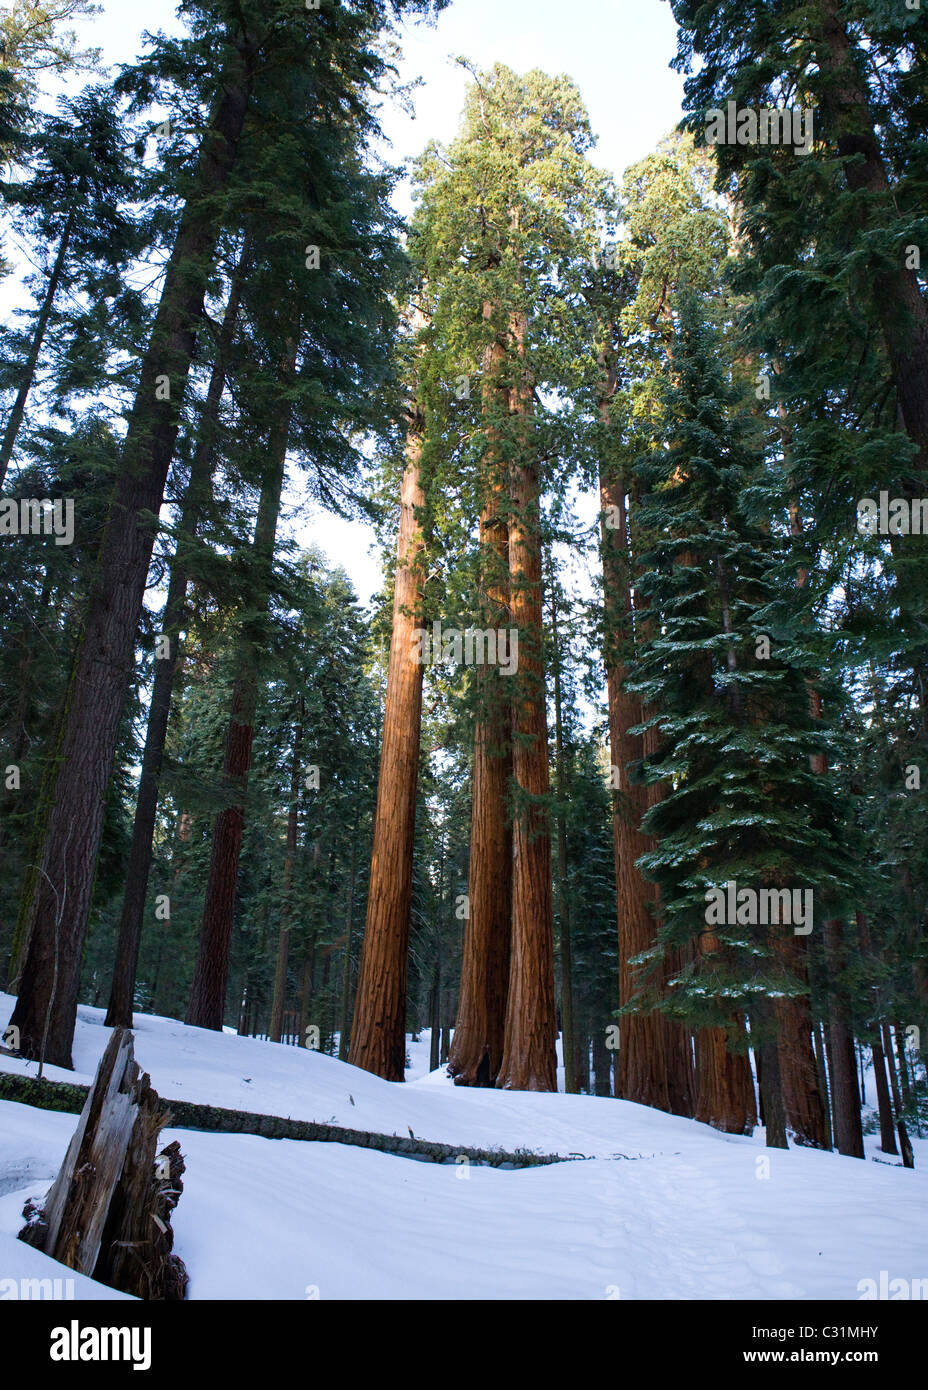 Giant Sequoia trees in winter Stock Photo